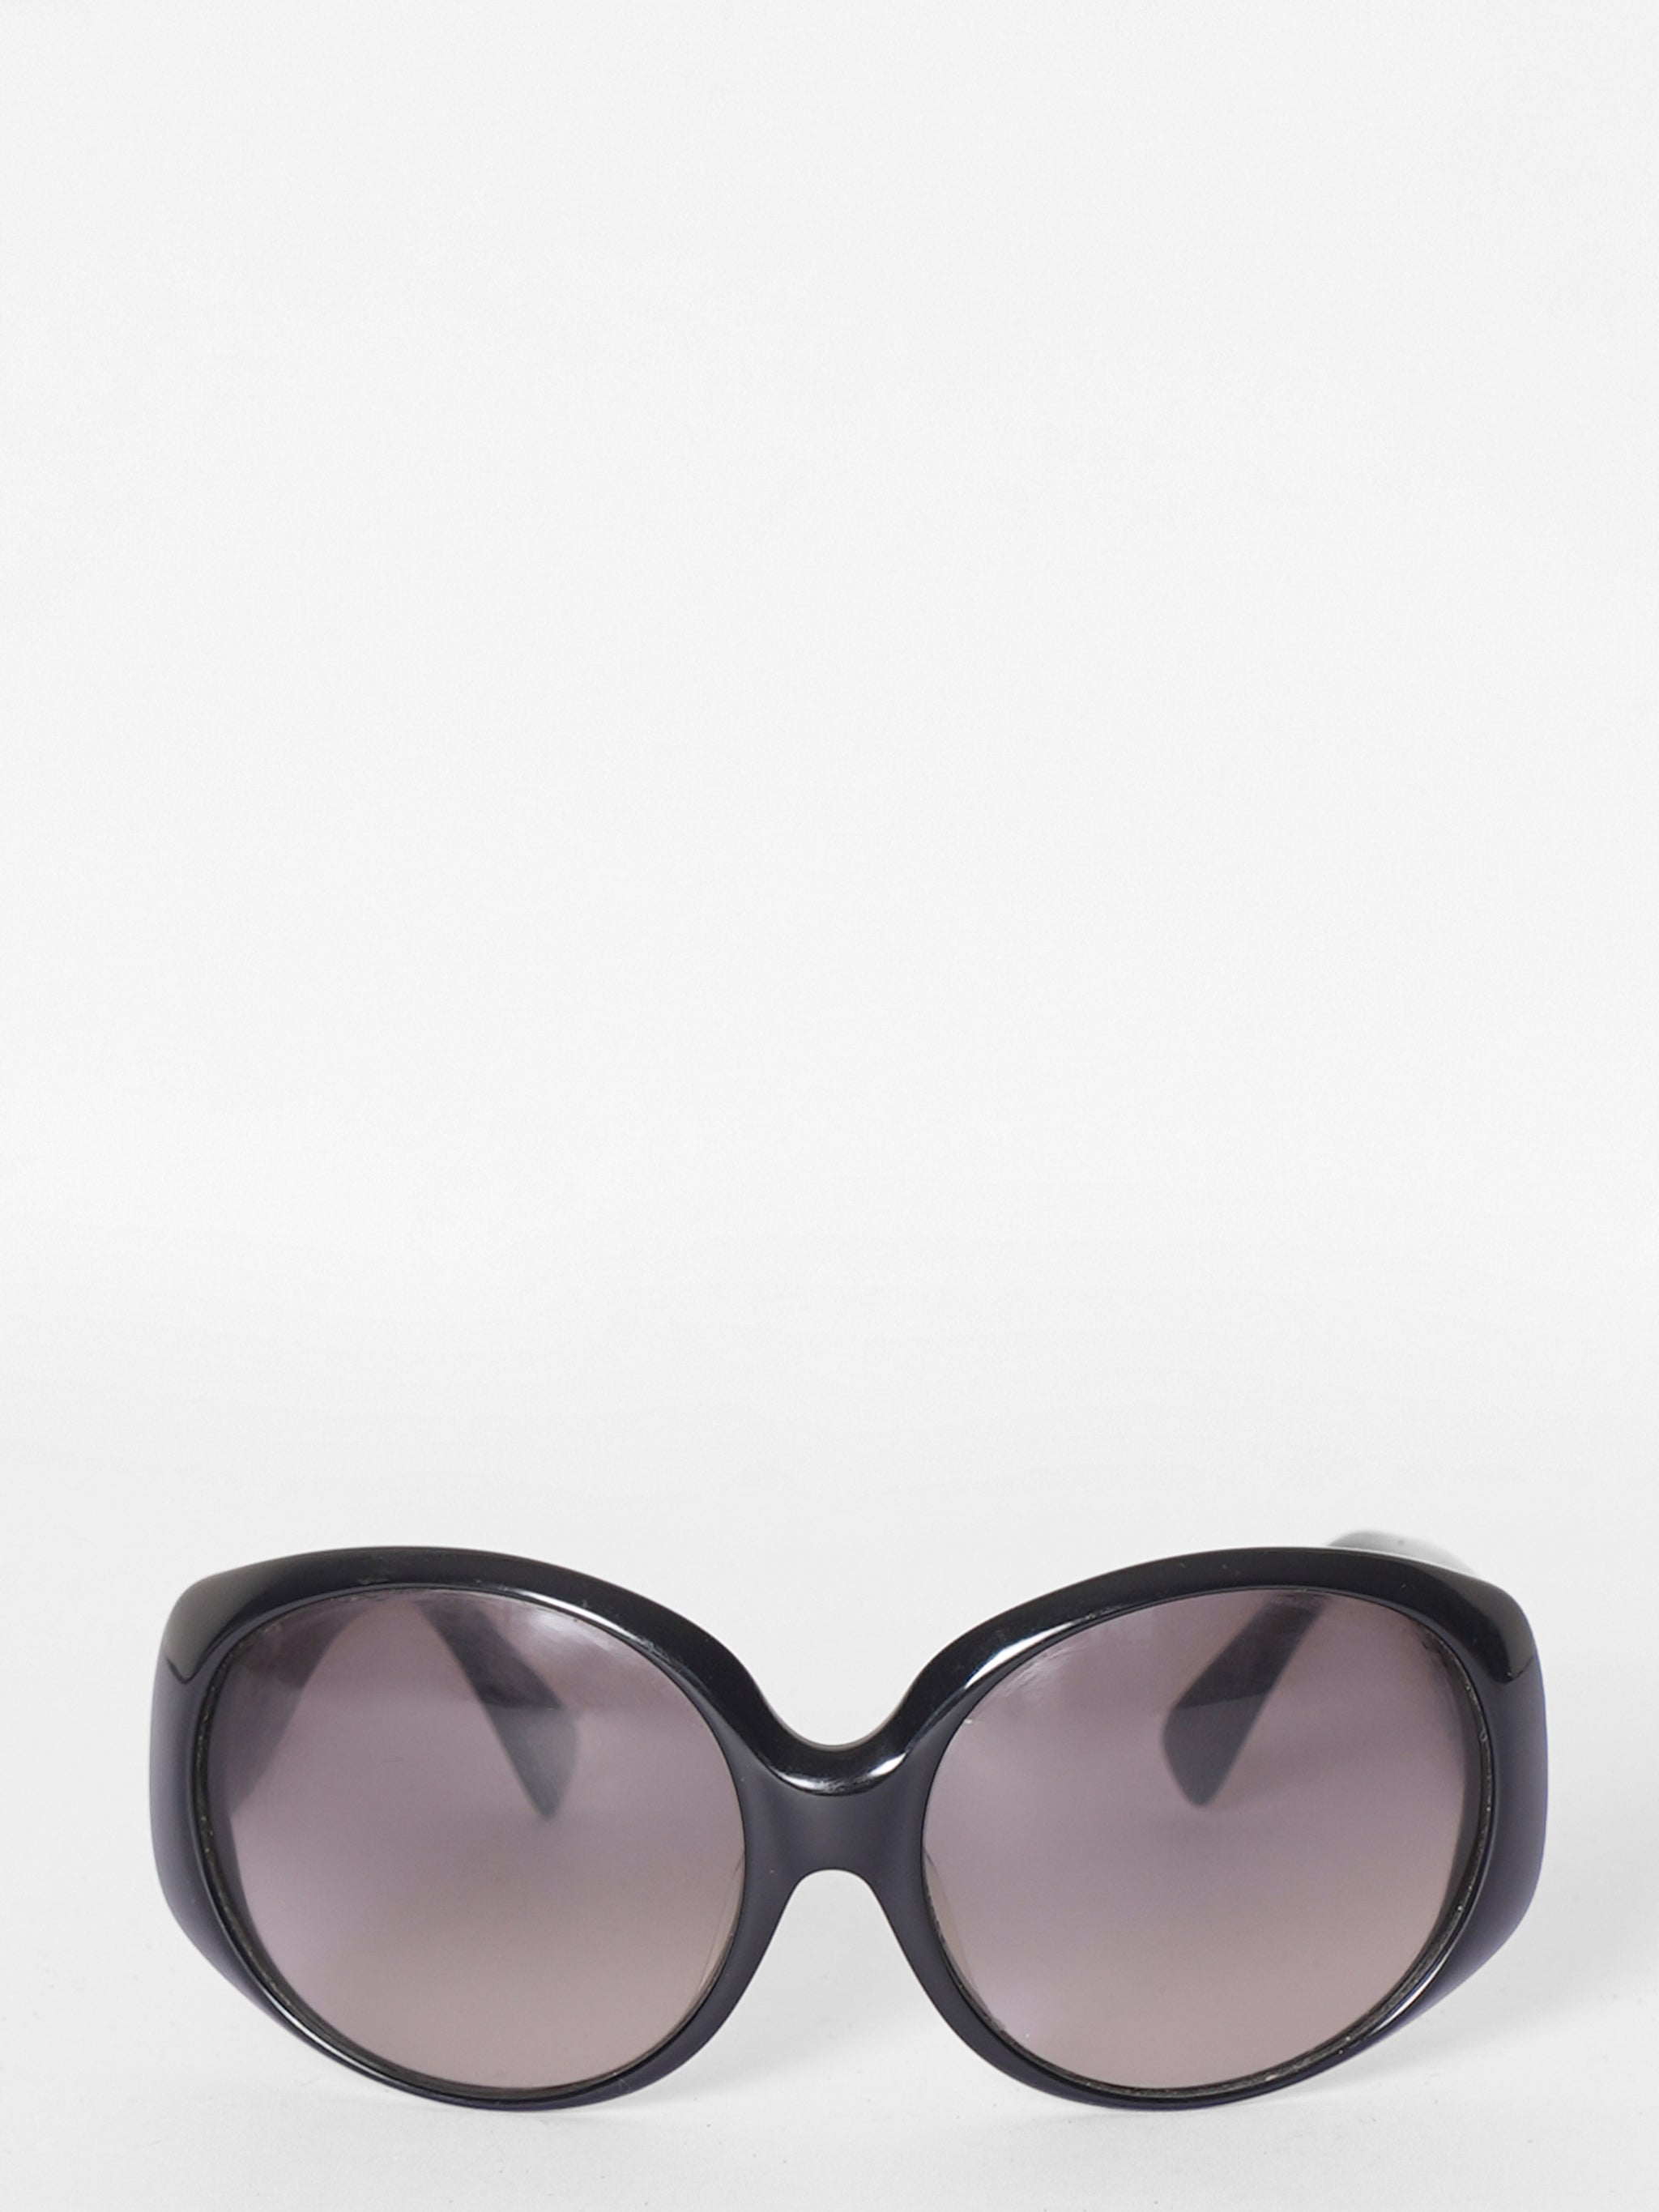 Fendi Black Oval Sunglasses